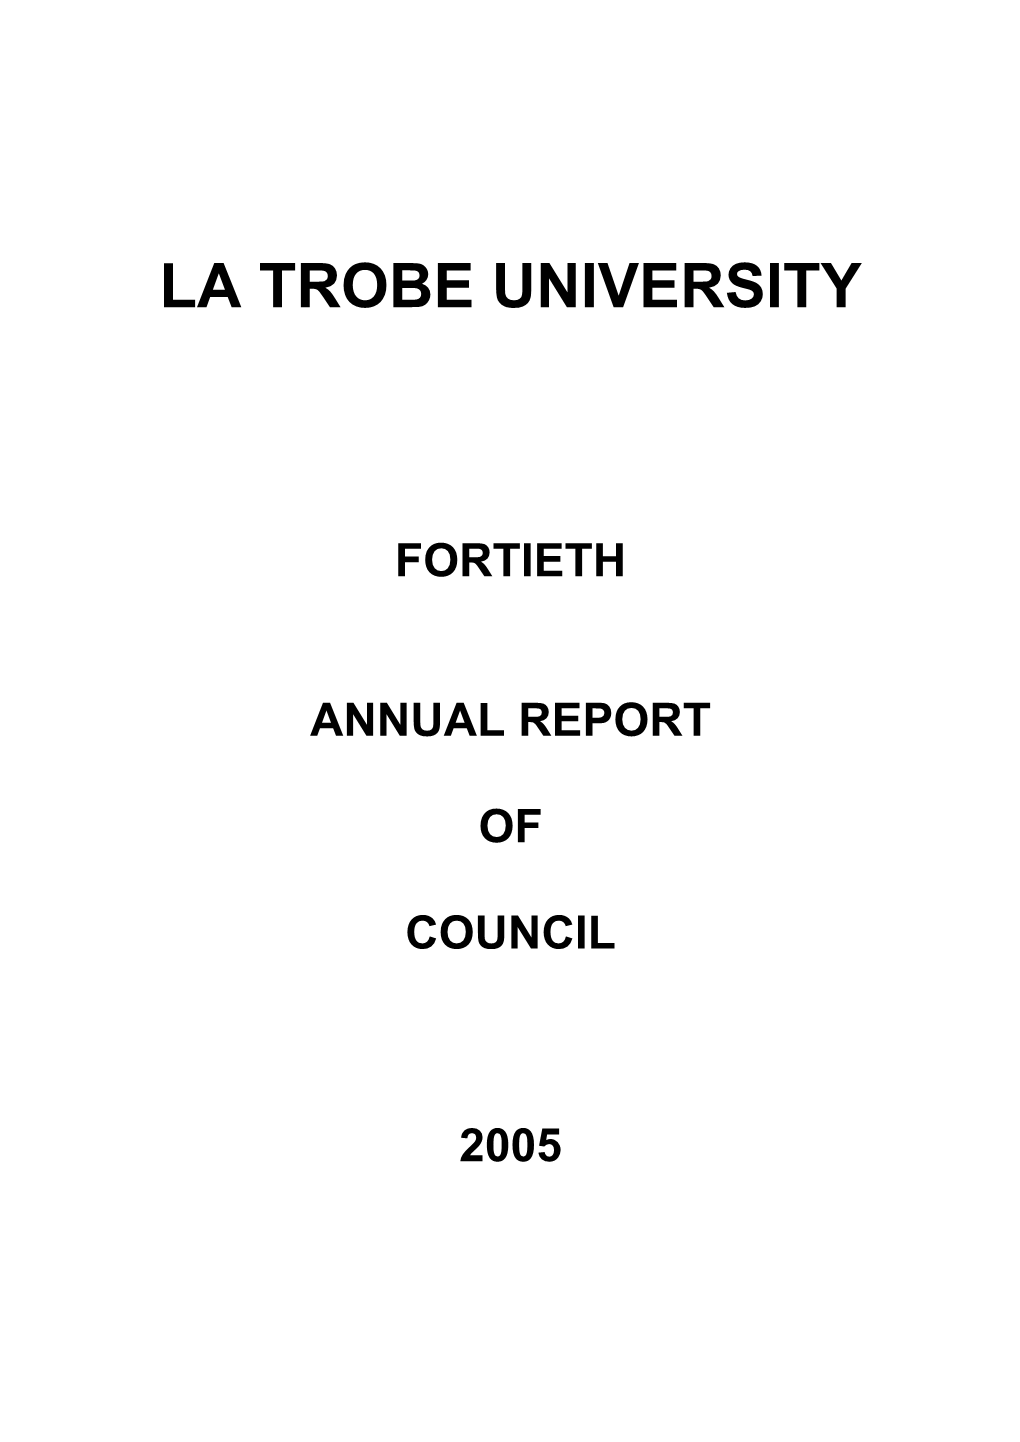 La Trobe University 2005 Annual Report